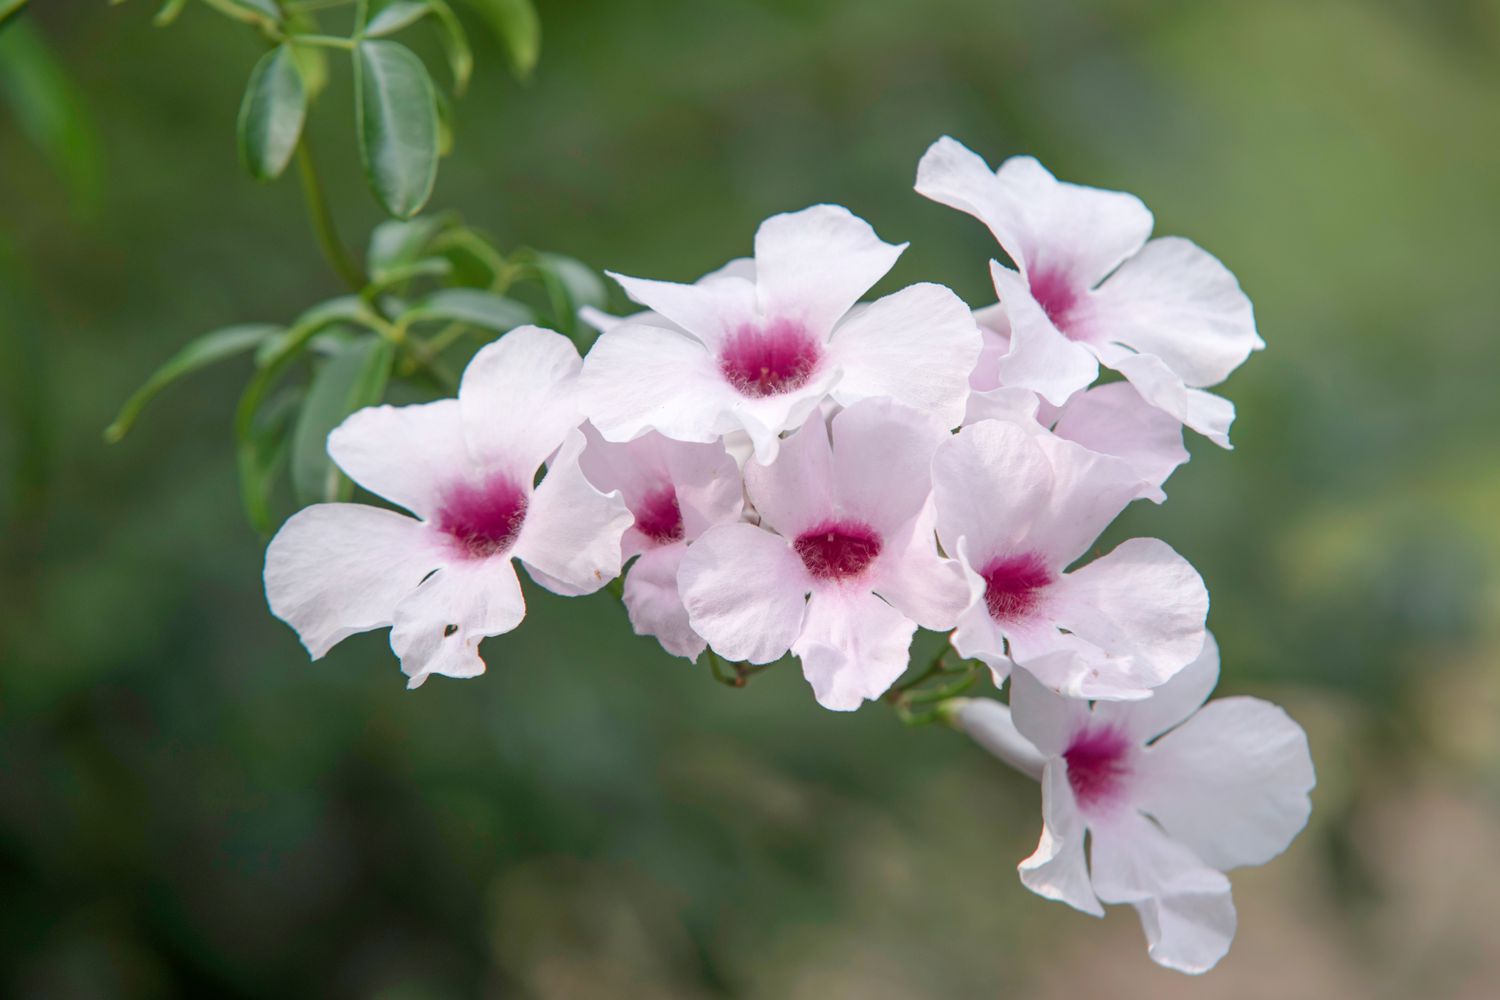 Laubengang mit weißen und rosa Blüten in Nahaufnahme